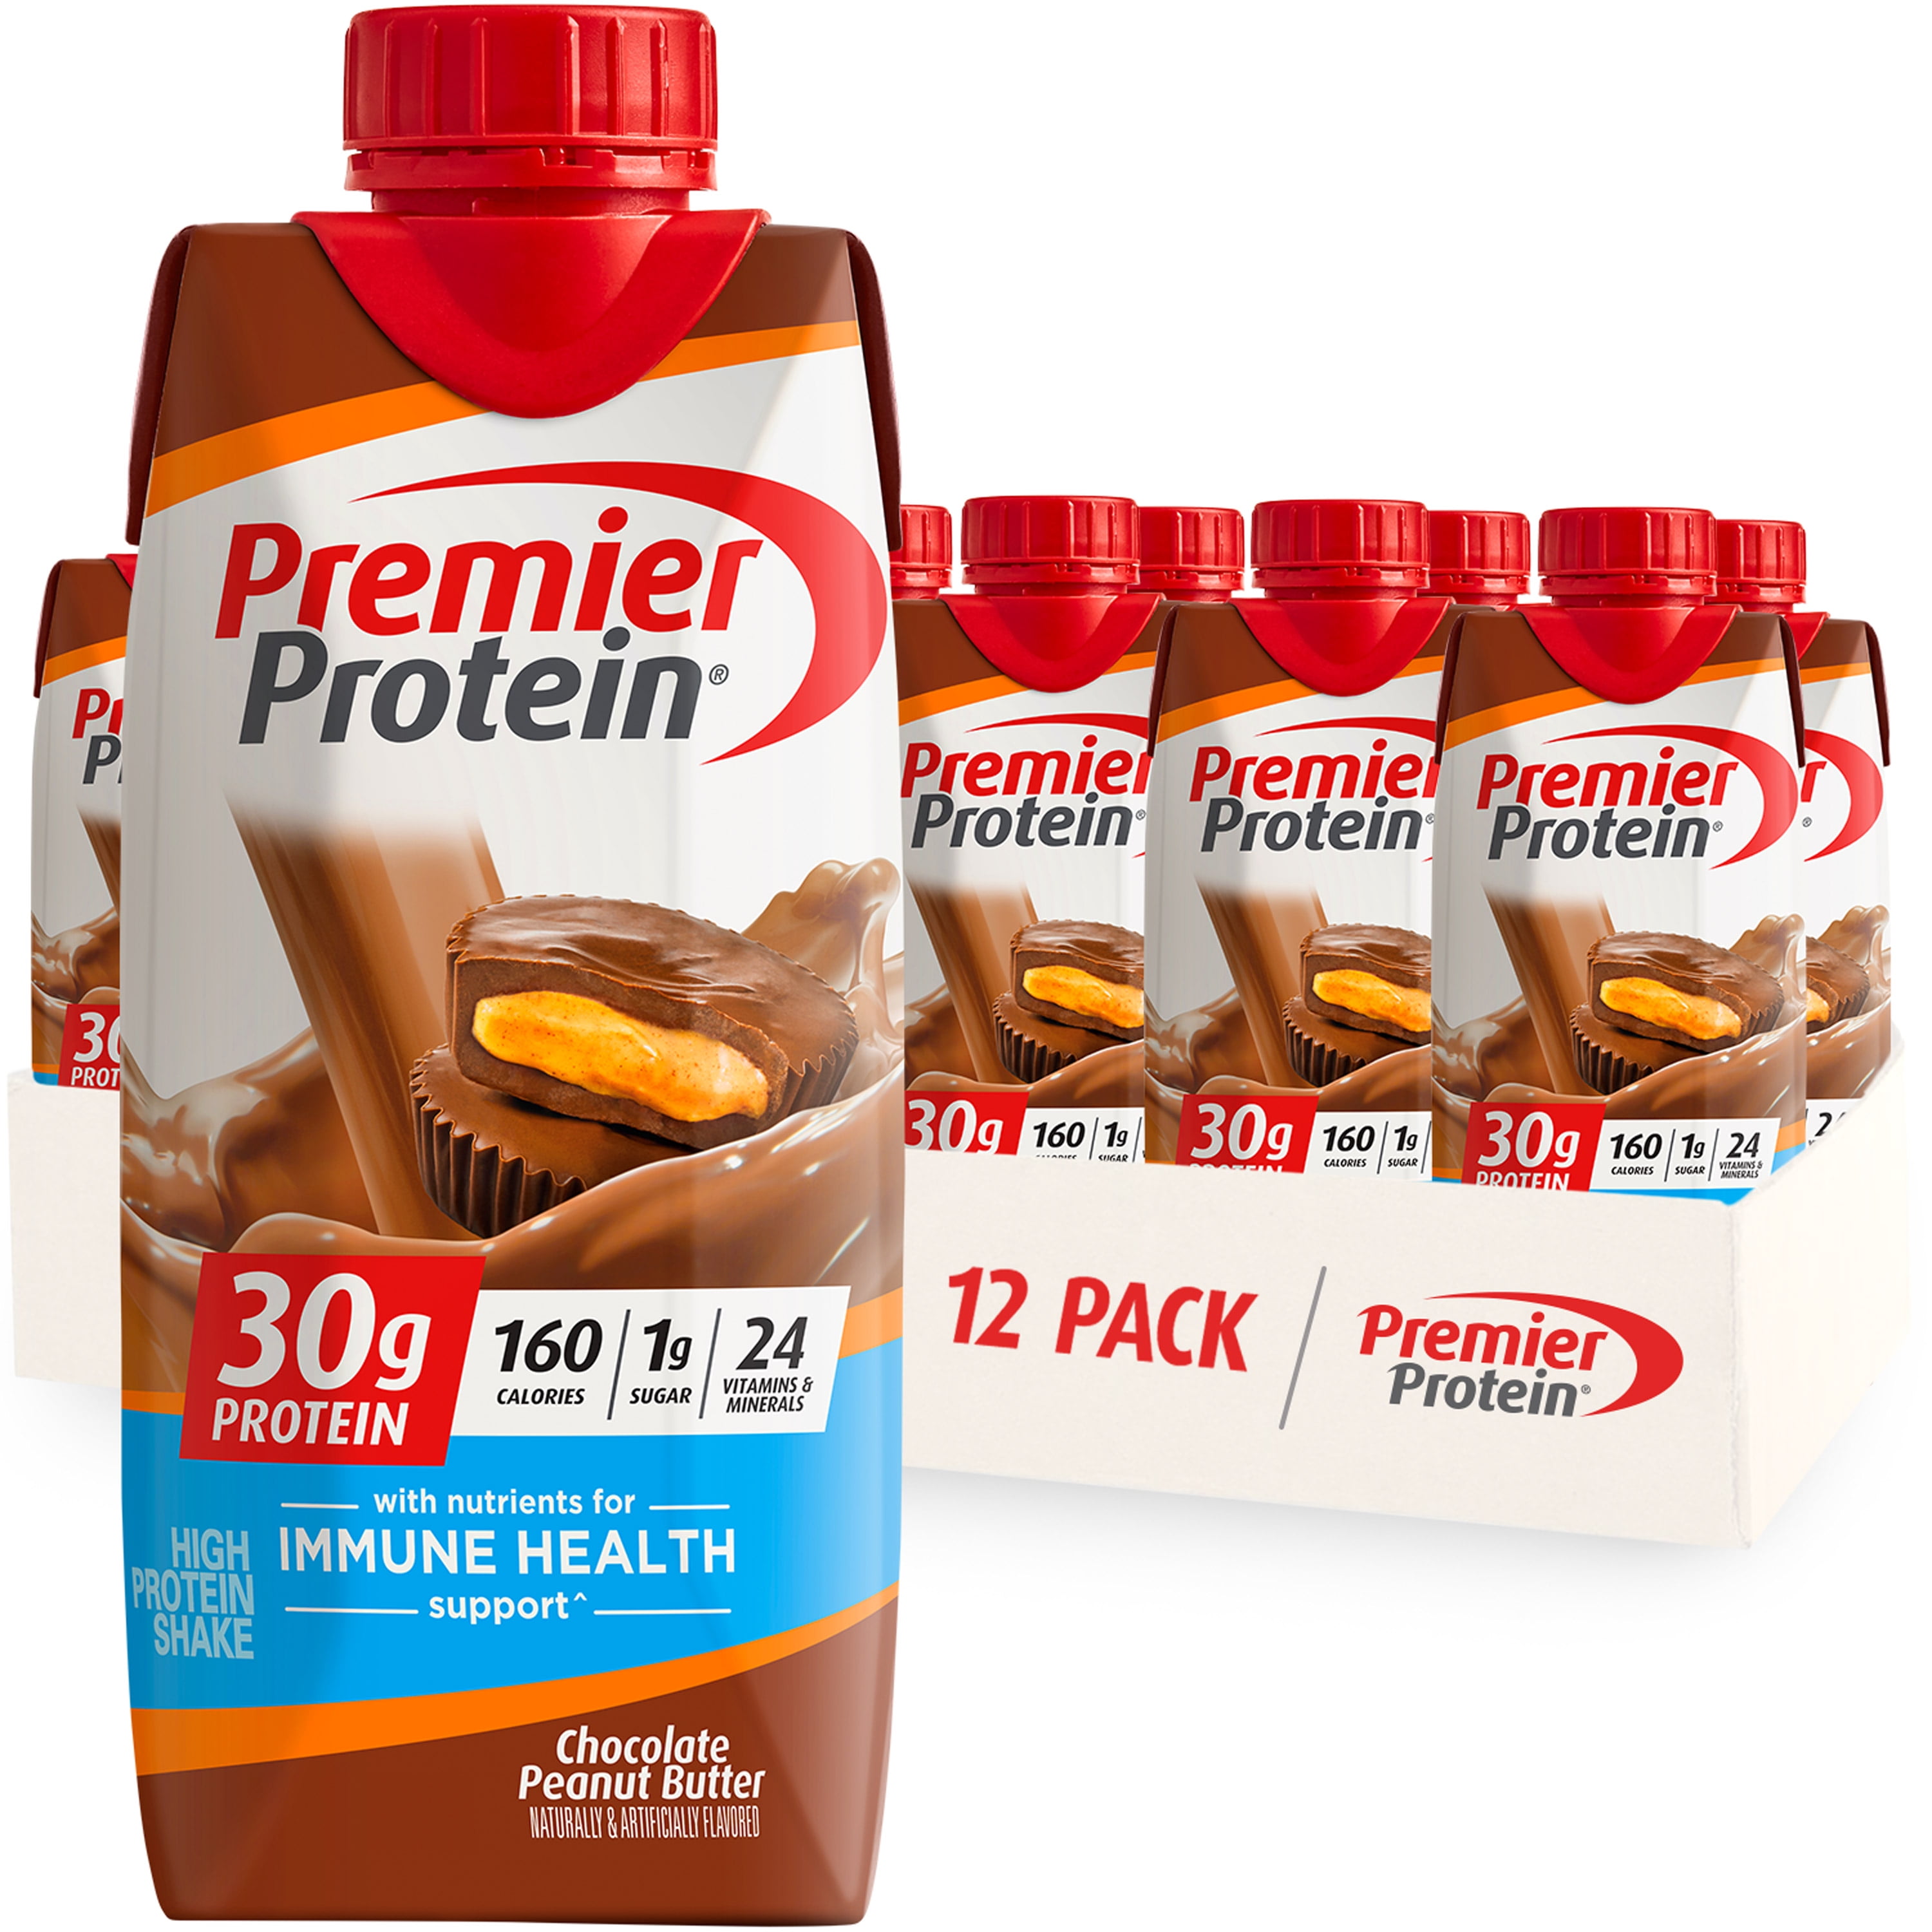 Premier Protein Shake, Strawberries & Cream, 30g Protein, 11 fl oz